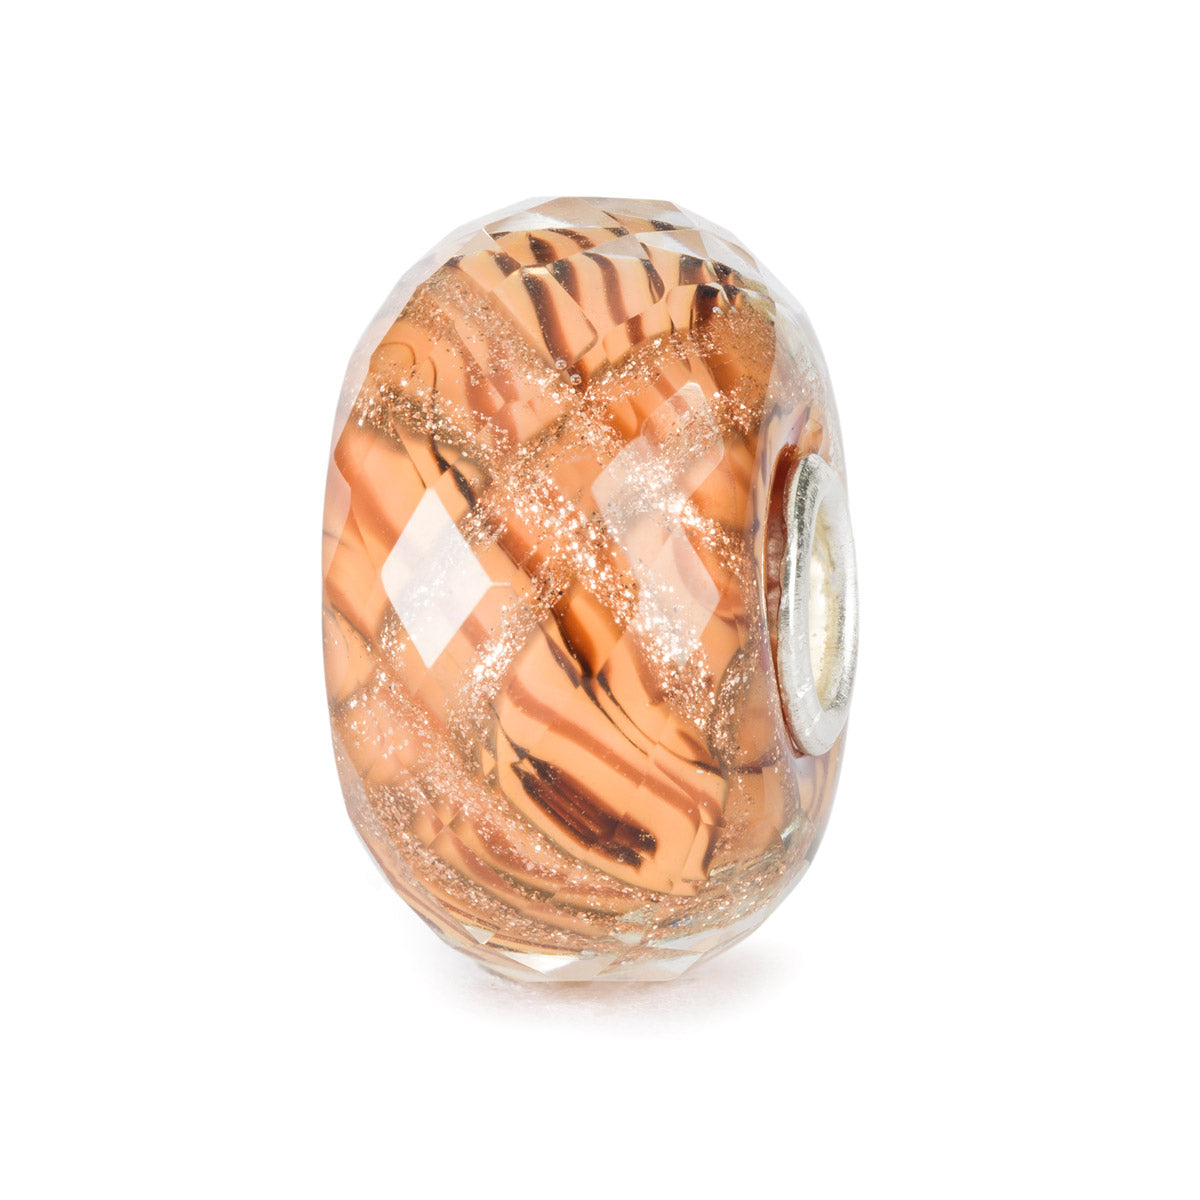 Abbraccio al Tramonto | Beads in vetro sfaccettato color pesca e strisce dorate. | TGLBE-30118